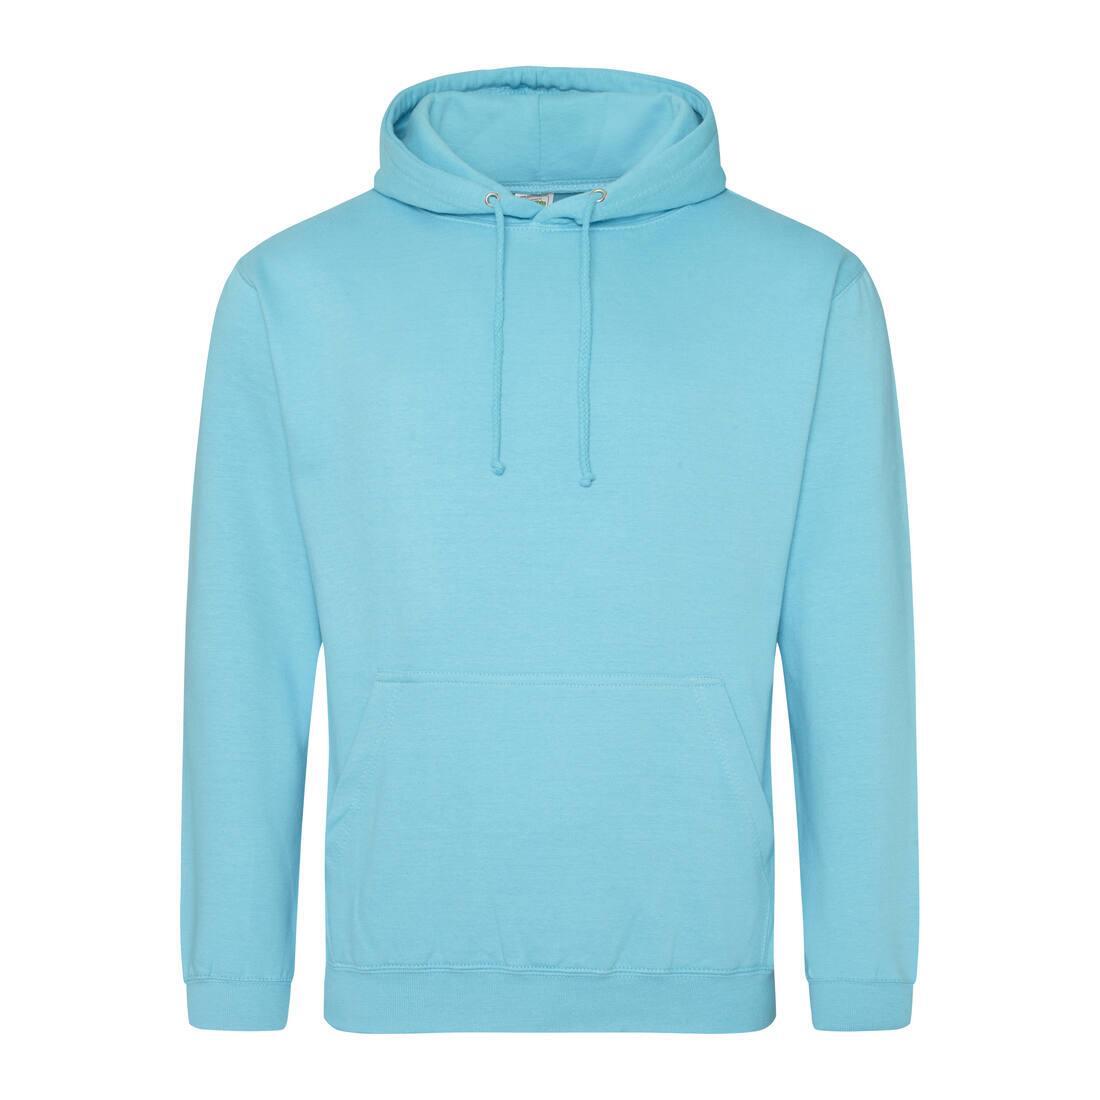 Heren hoodie turquoise surf perfect voor bedrukking van logo, tekst, foto